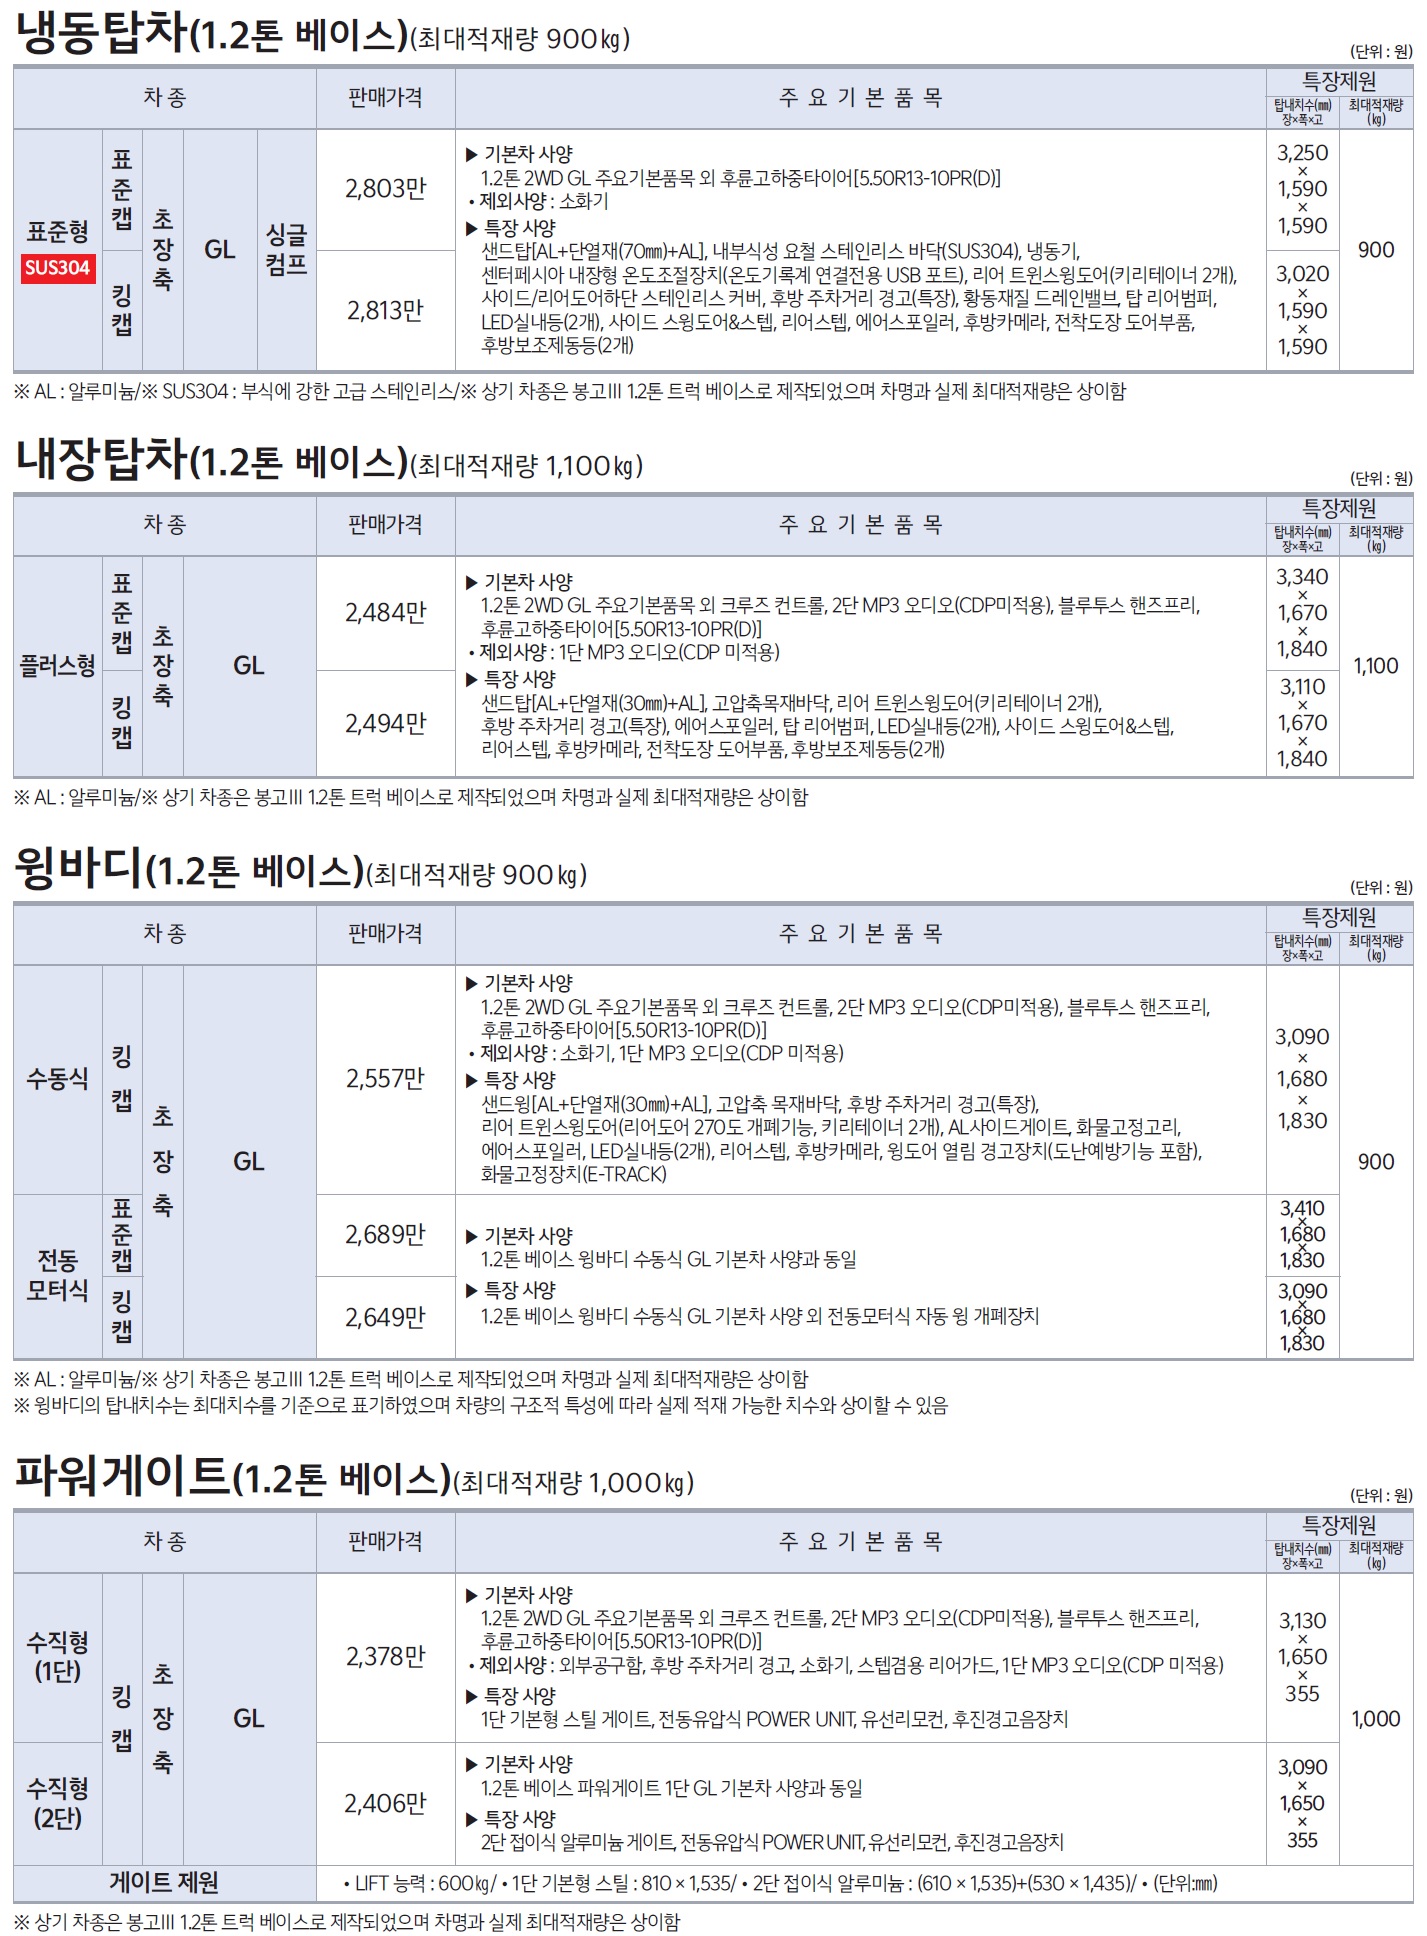 봉고3 특장차 가격표 - 2021년 02월 -9.jpg